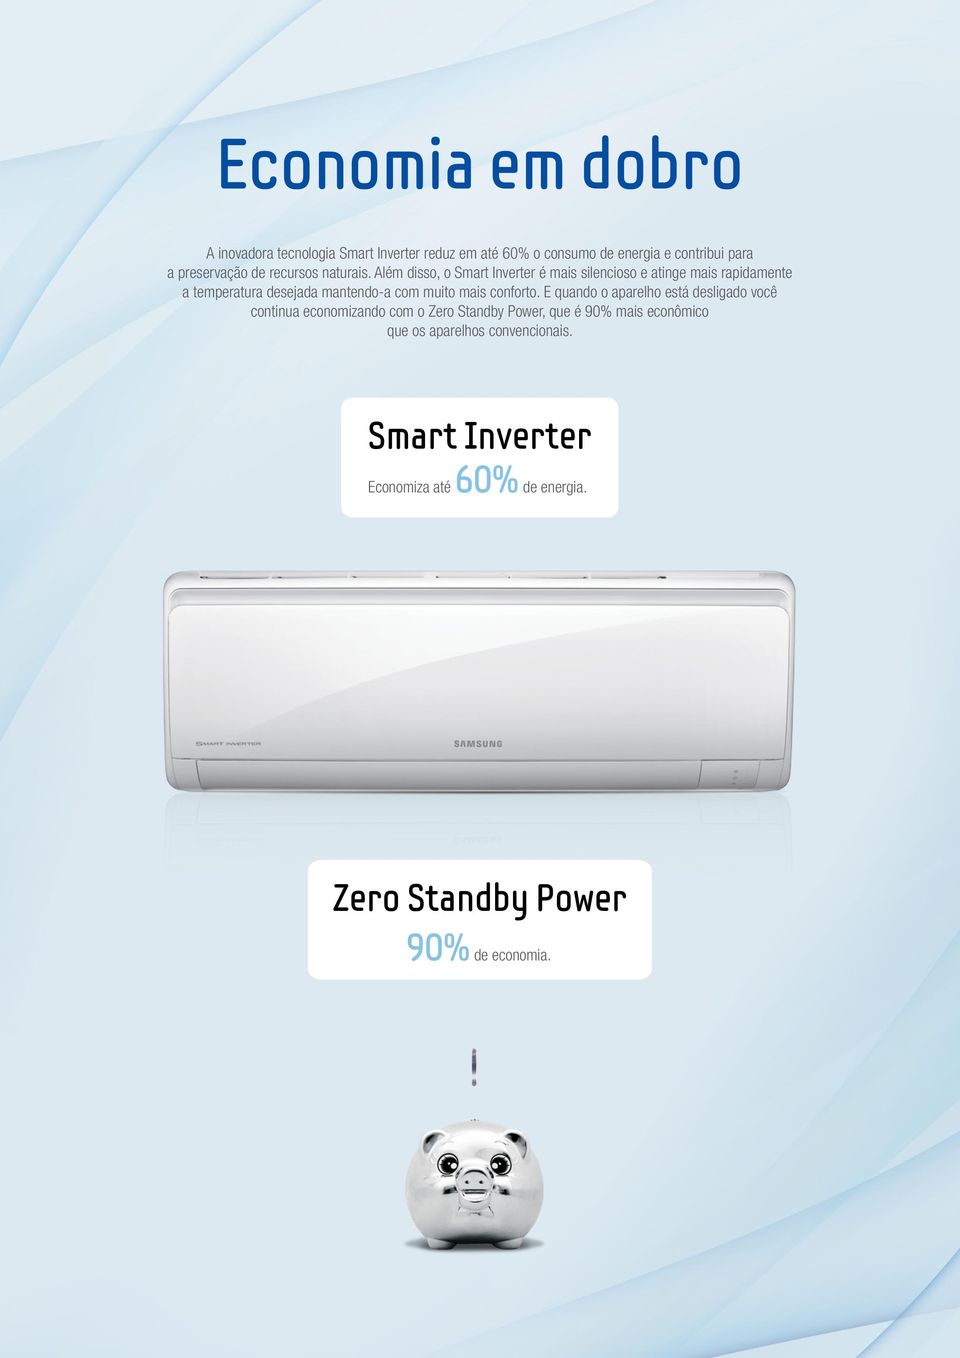 lém disso, o Smart Inverter é mais silencioso e atinge mais rapidamente a temperatura desejada mantendoa com muito mais